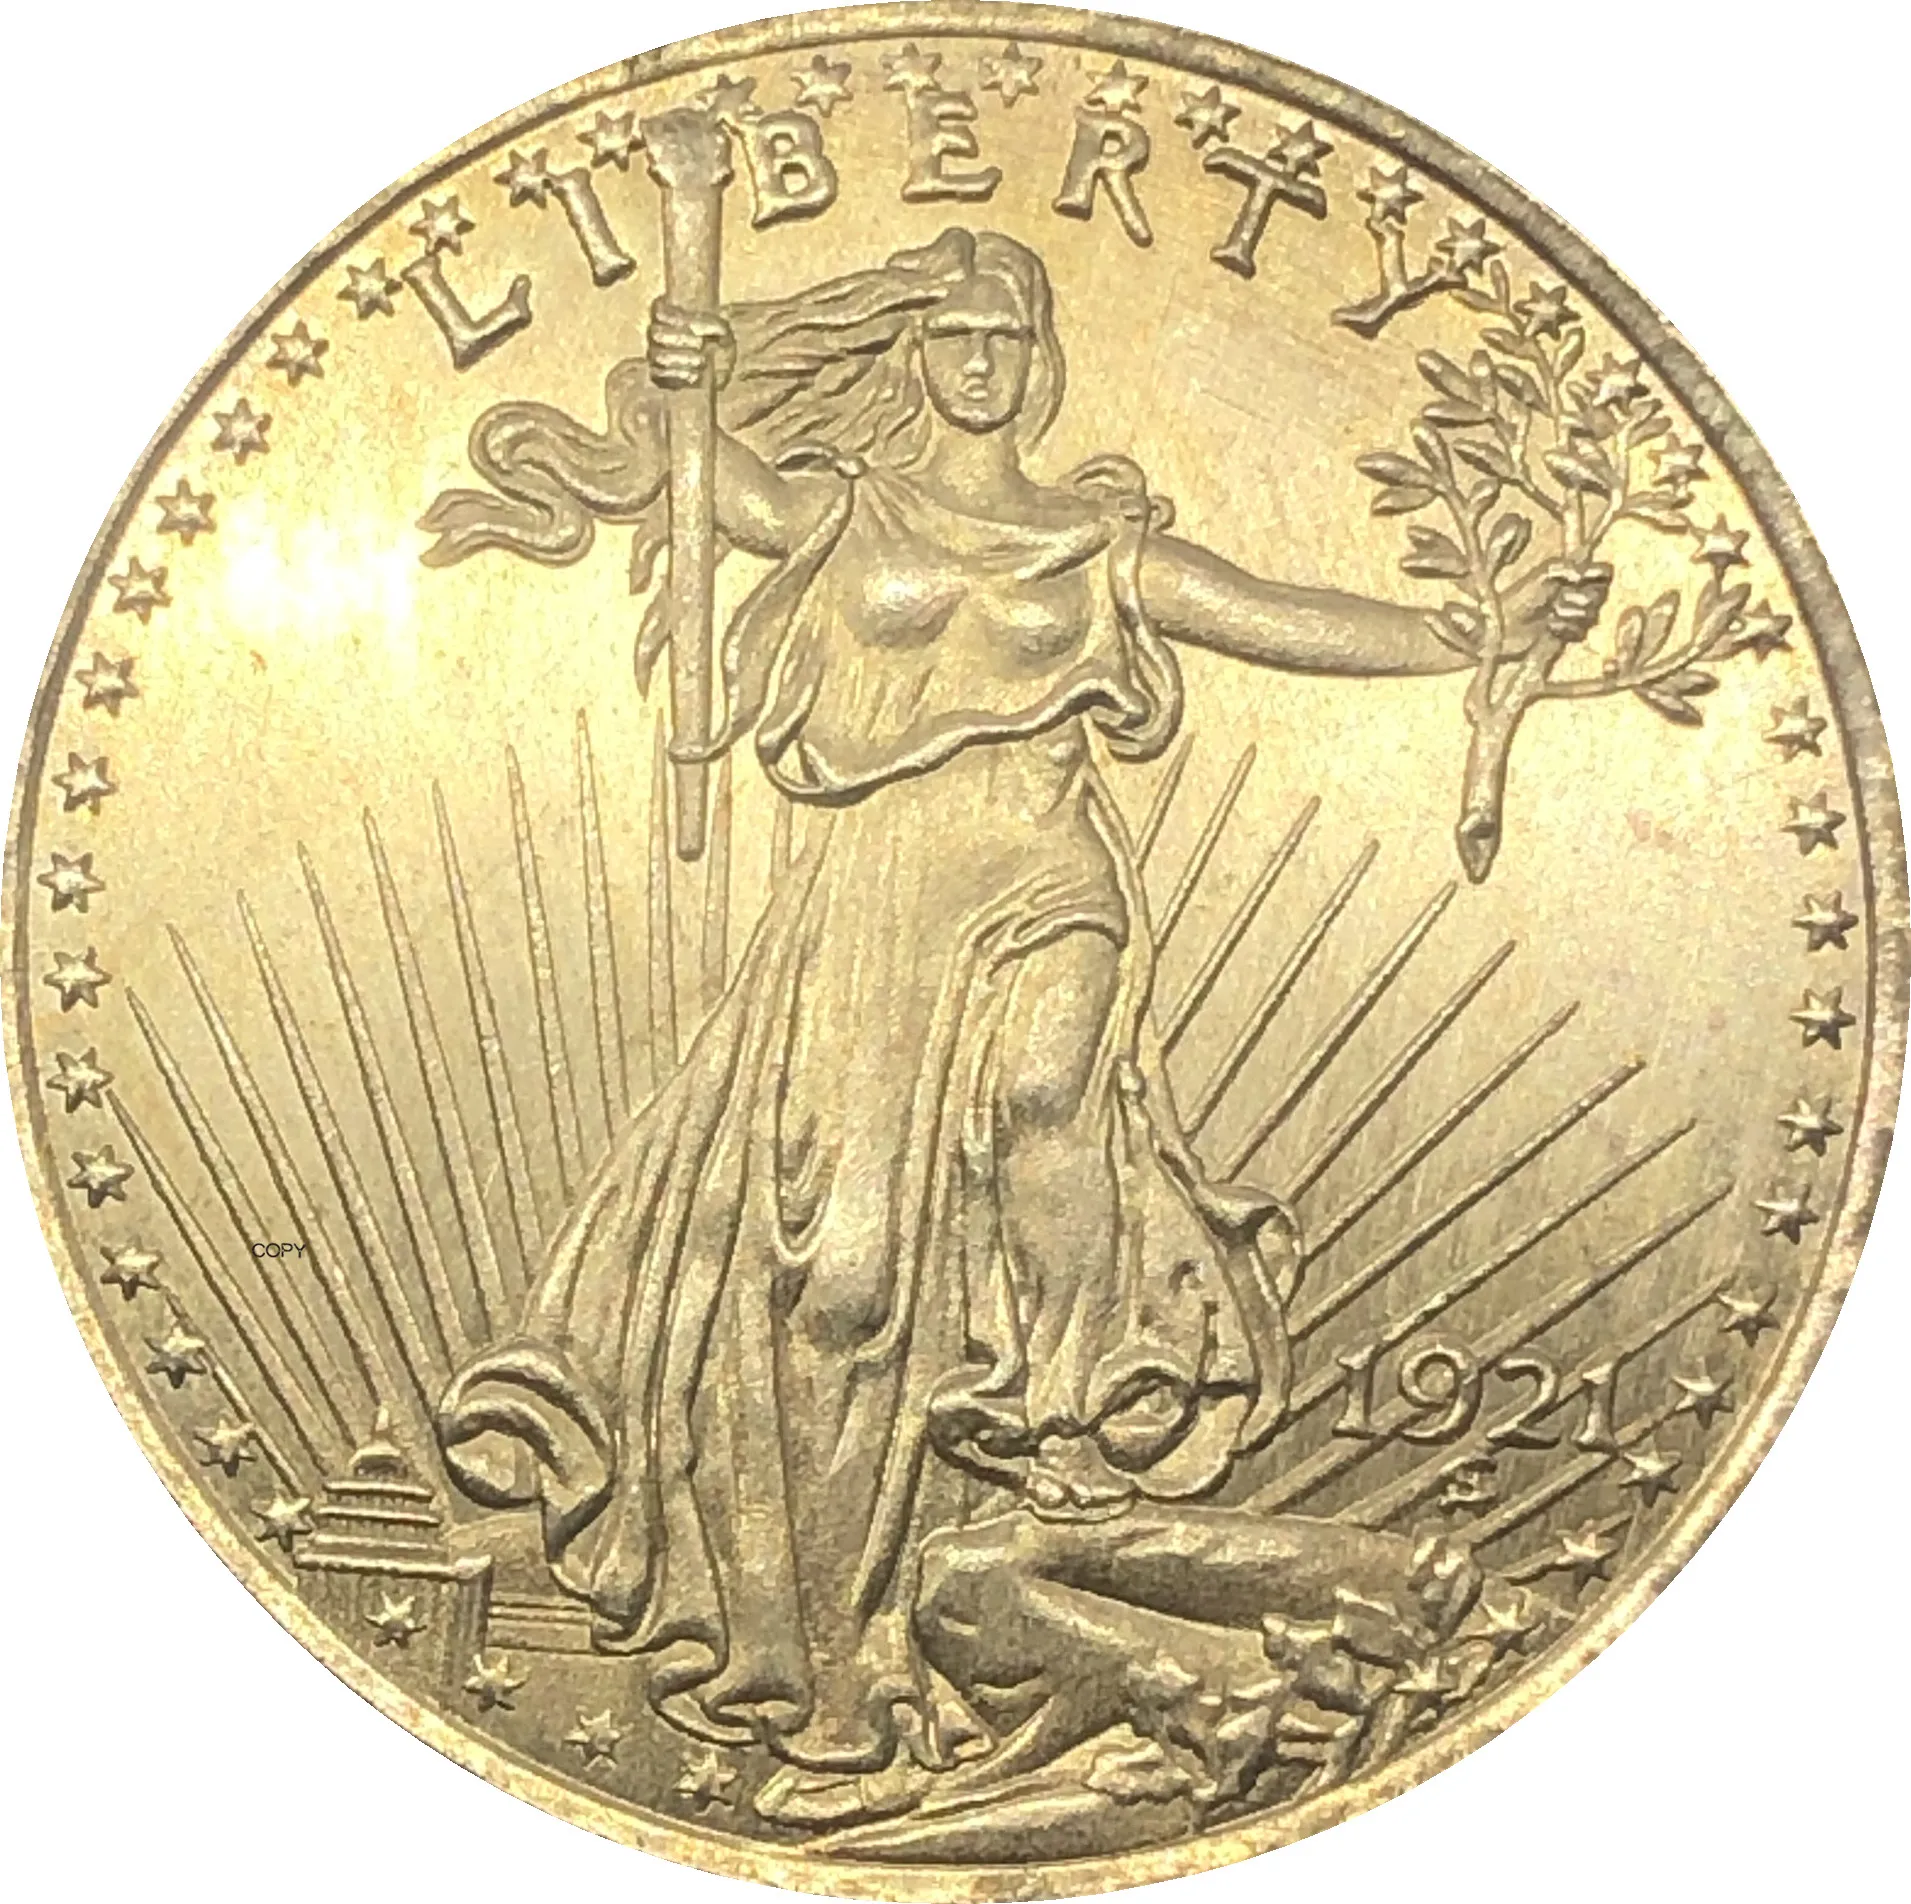 

США Liberty 1921 двадцать 20 долларов Saint Gaudens Double Eagle с девизом в Боге, мы доверяем золотым копировальным монетам